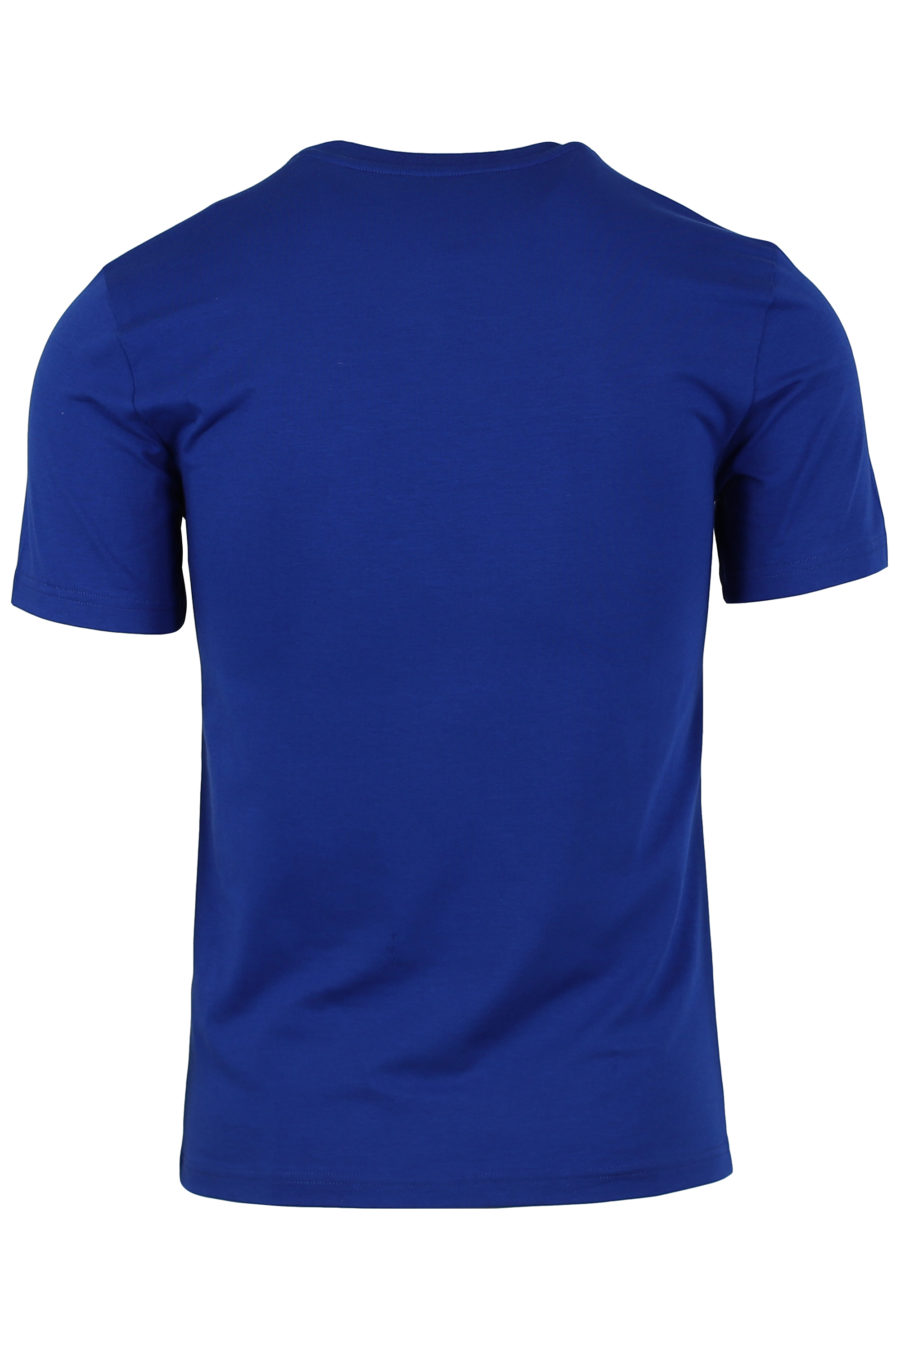 T-shirt blau großes Logo vorne - IMG 0918